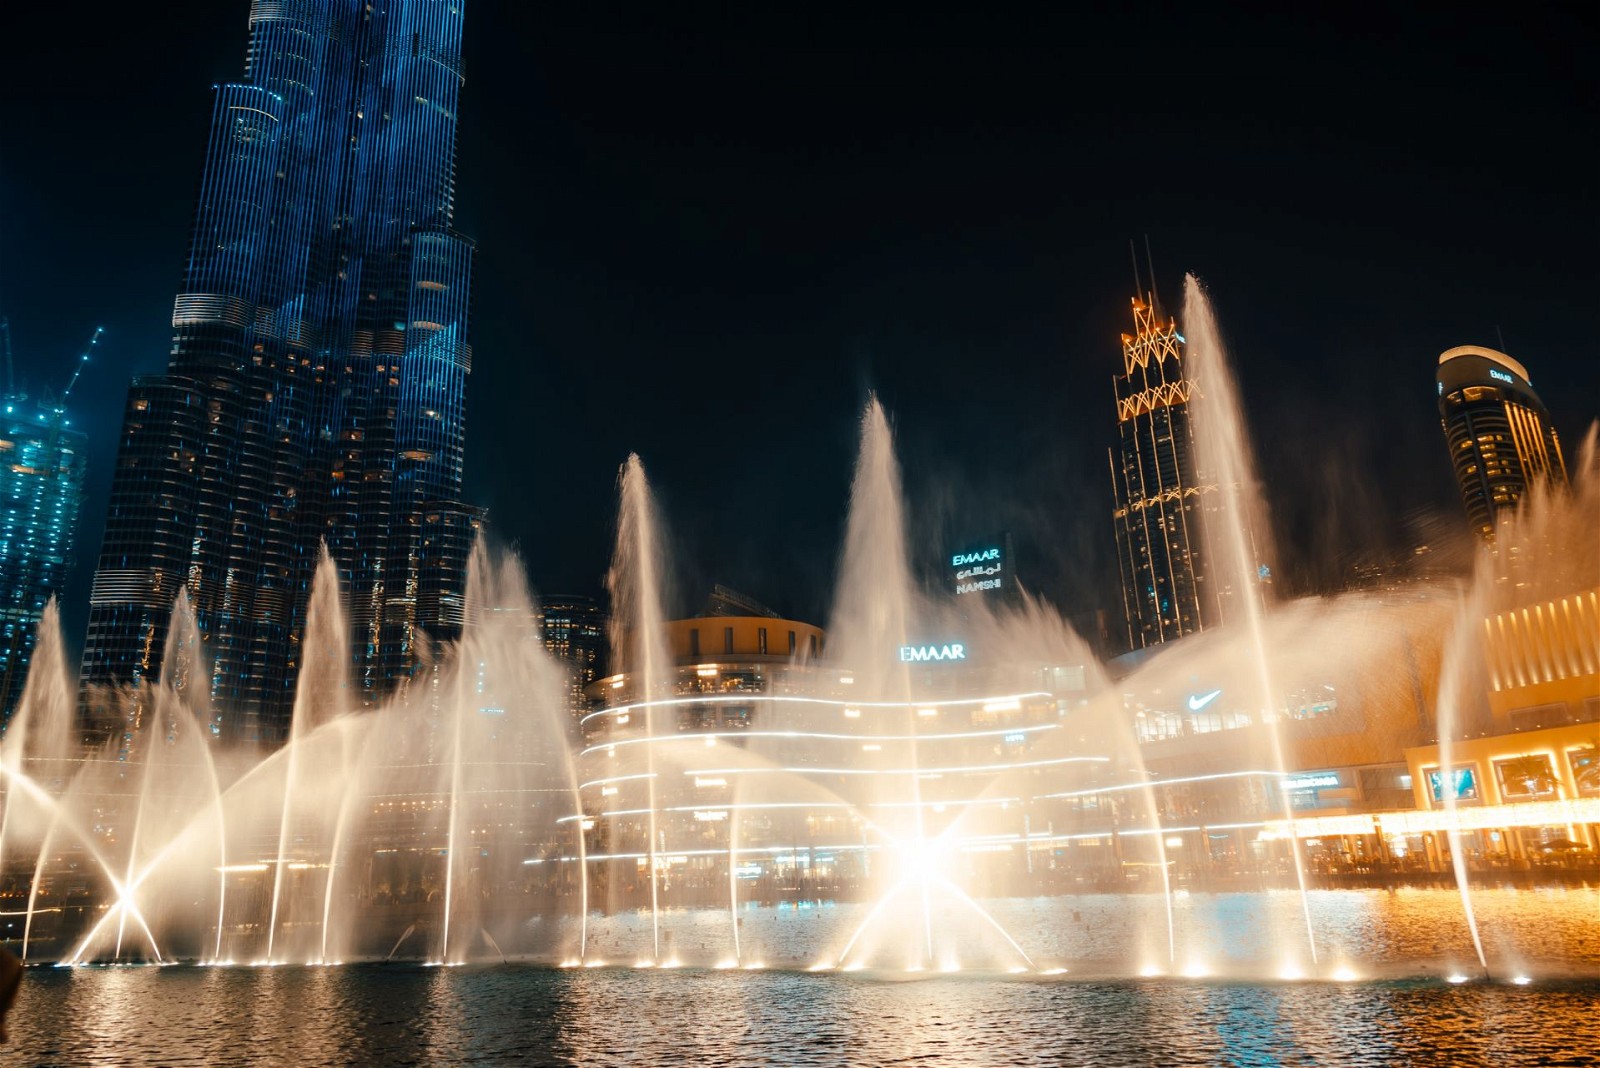 Dubai Fountain: Located outside the Dubai Mall,